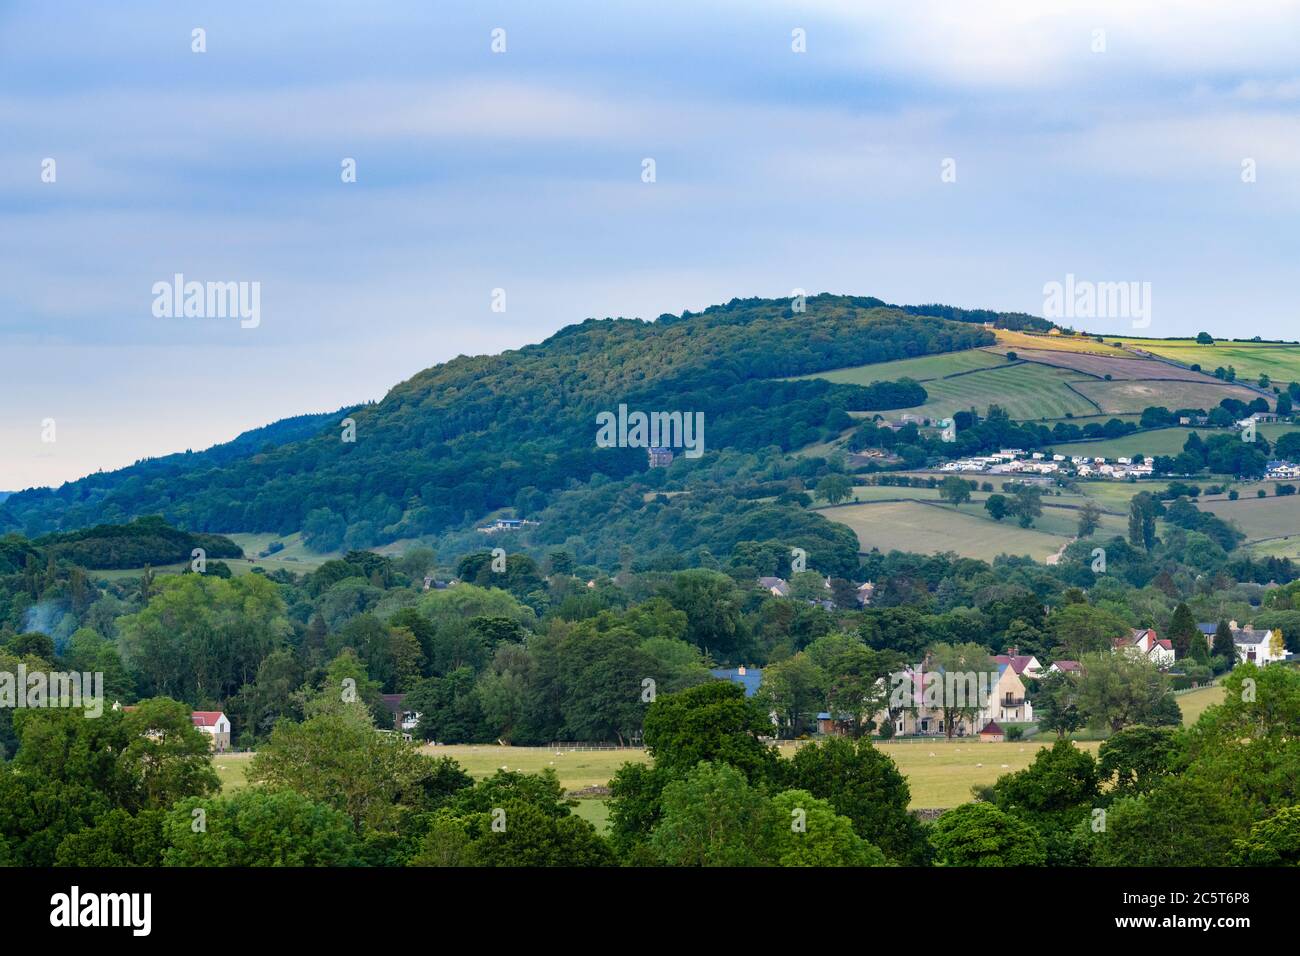 Hoch prominente Wahrzeichen Kamm oder Böschung, Waldbäume auf Hügel & Häuser in malerischen Tal - Blick auf Chevin Forest Park, Wharfedale, England Großbritannien Stockfoto